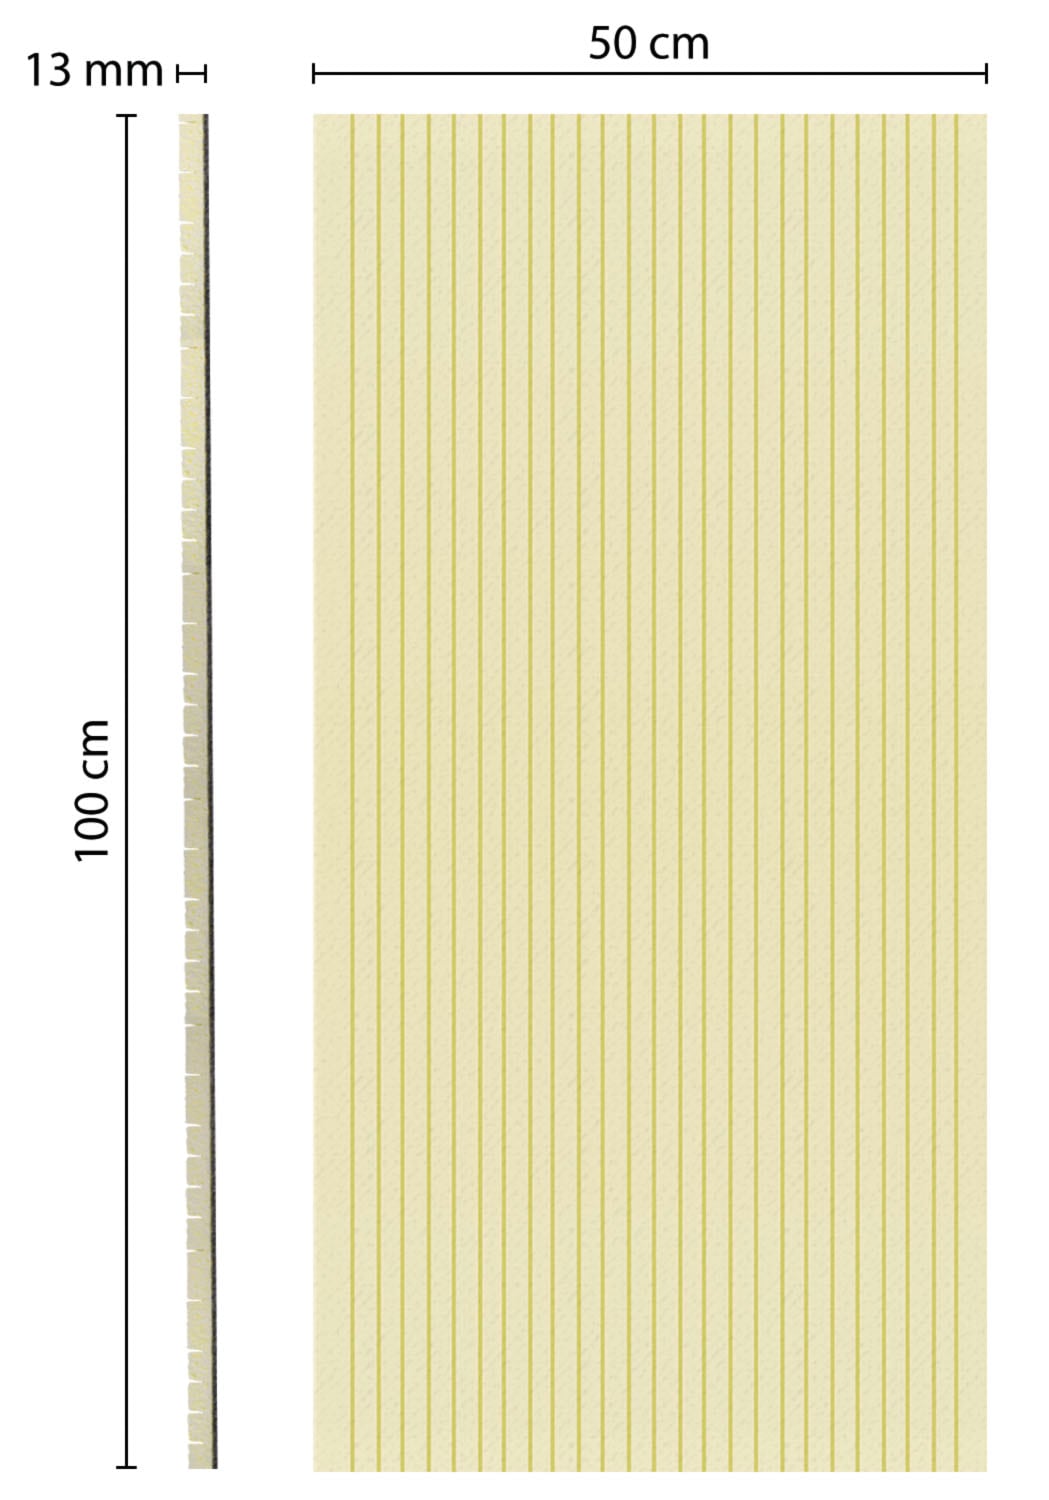 SCHELLENBERG Rollladenkastendämmung »Rollladenkasten-Dämmung«, 2-teilig, 100 x 50, 1,3 cm dick, für Rollladenkästen, 66280